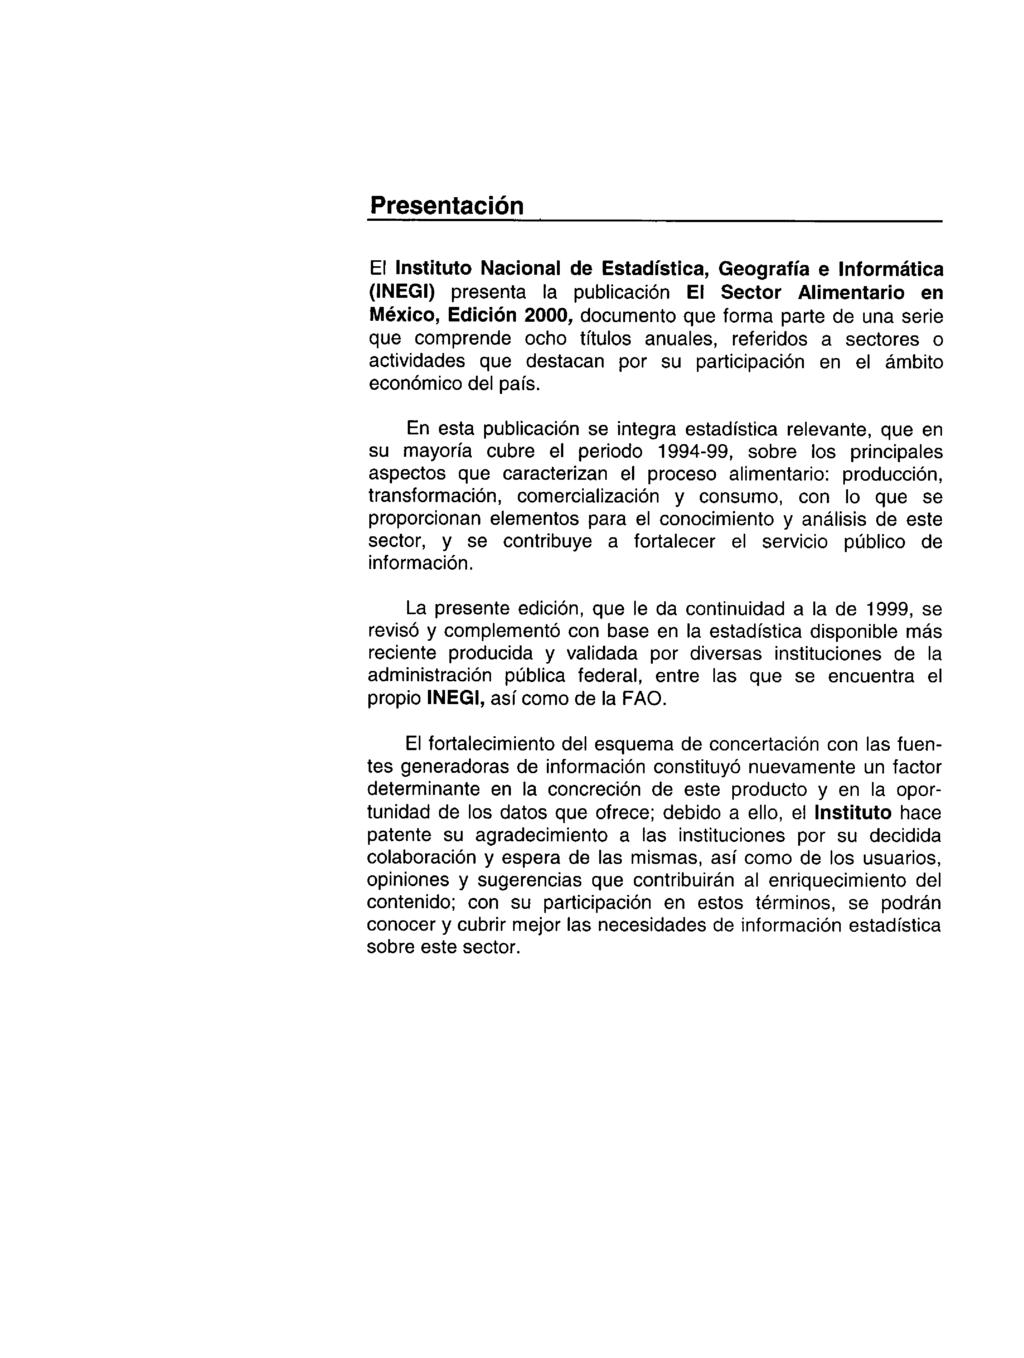 Presentación El Instituto Nacional de Estadística, Geografía e Informática (INEGI) presenta la publicación El Sector Alimentario en México, Edición 2000, documento que forma parte de una serie que